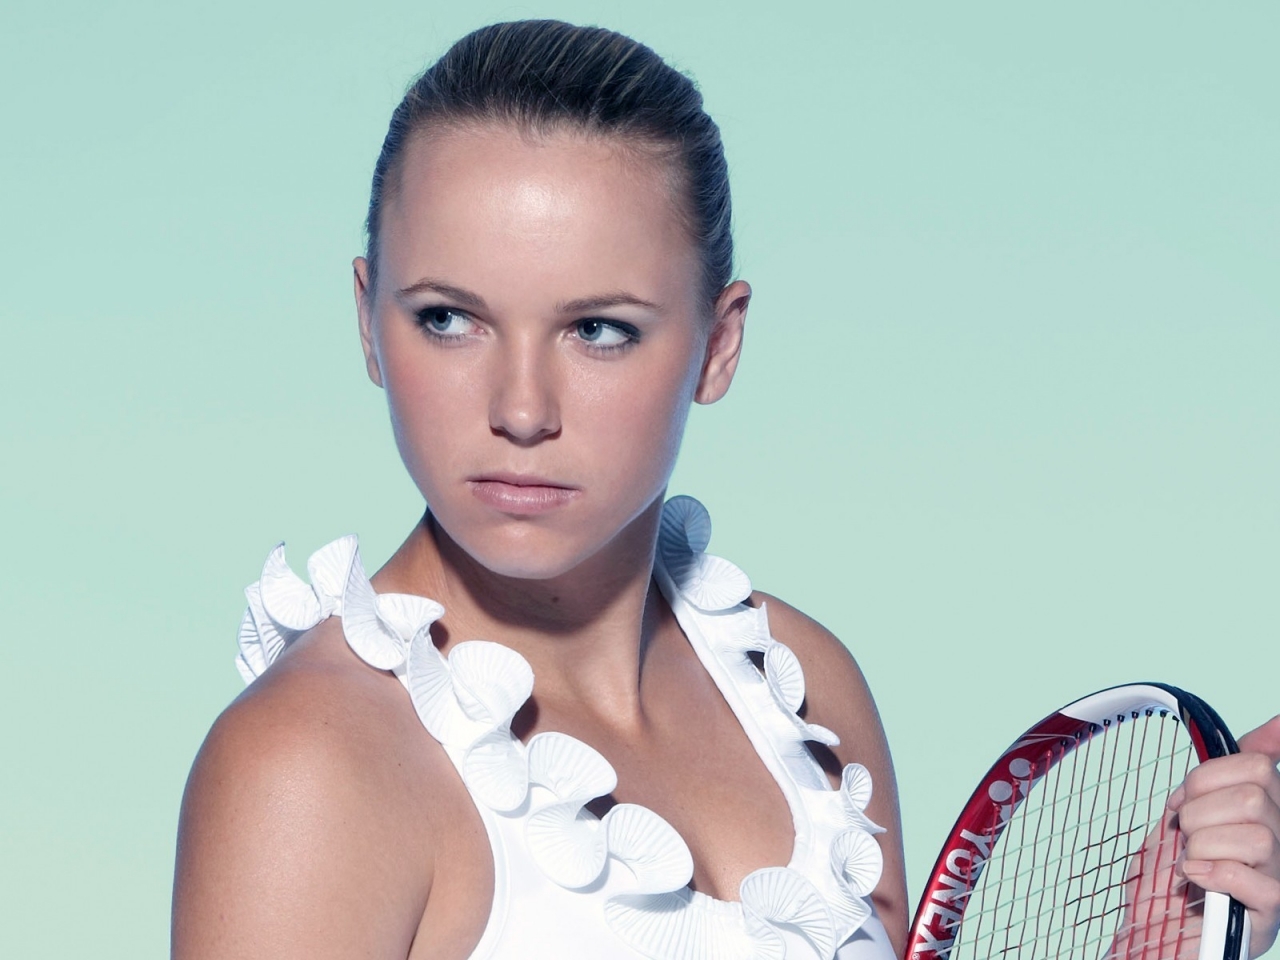 Caroline Wozniacki Tennis Player for 1280 x 960 resolution